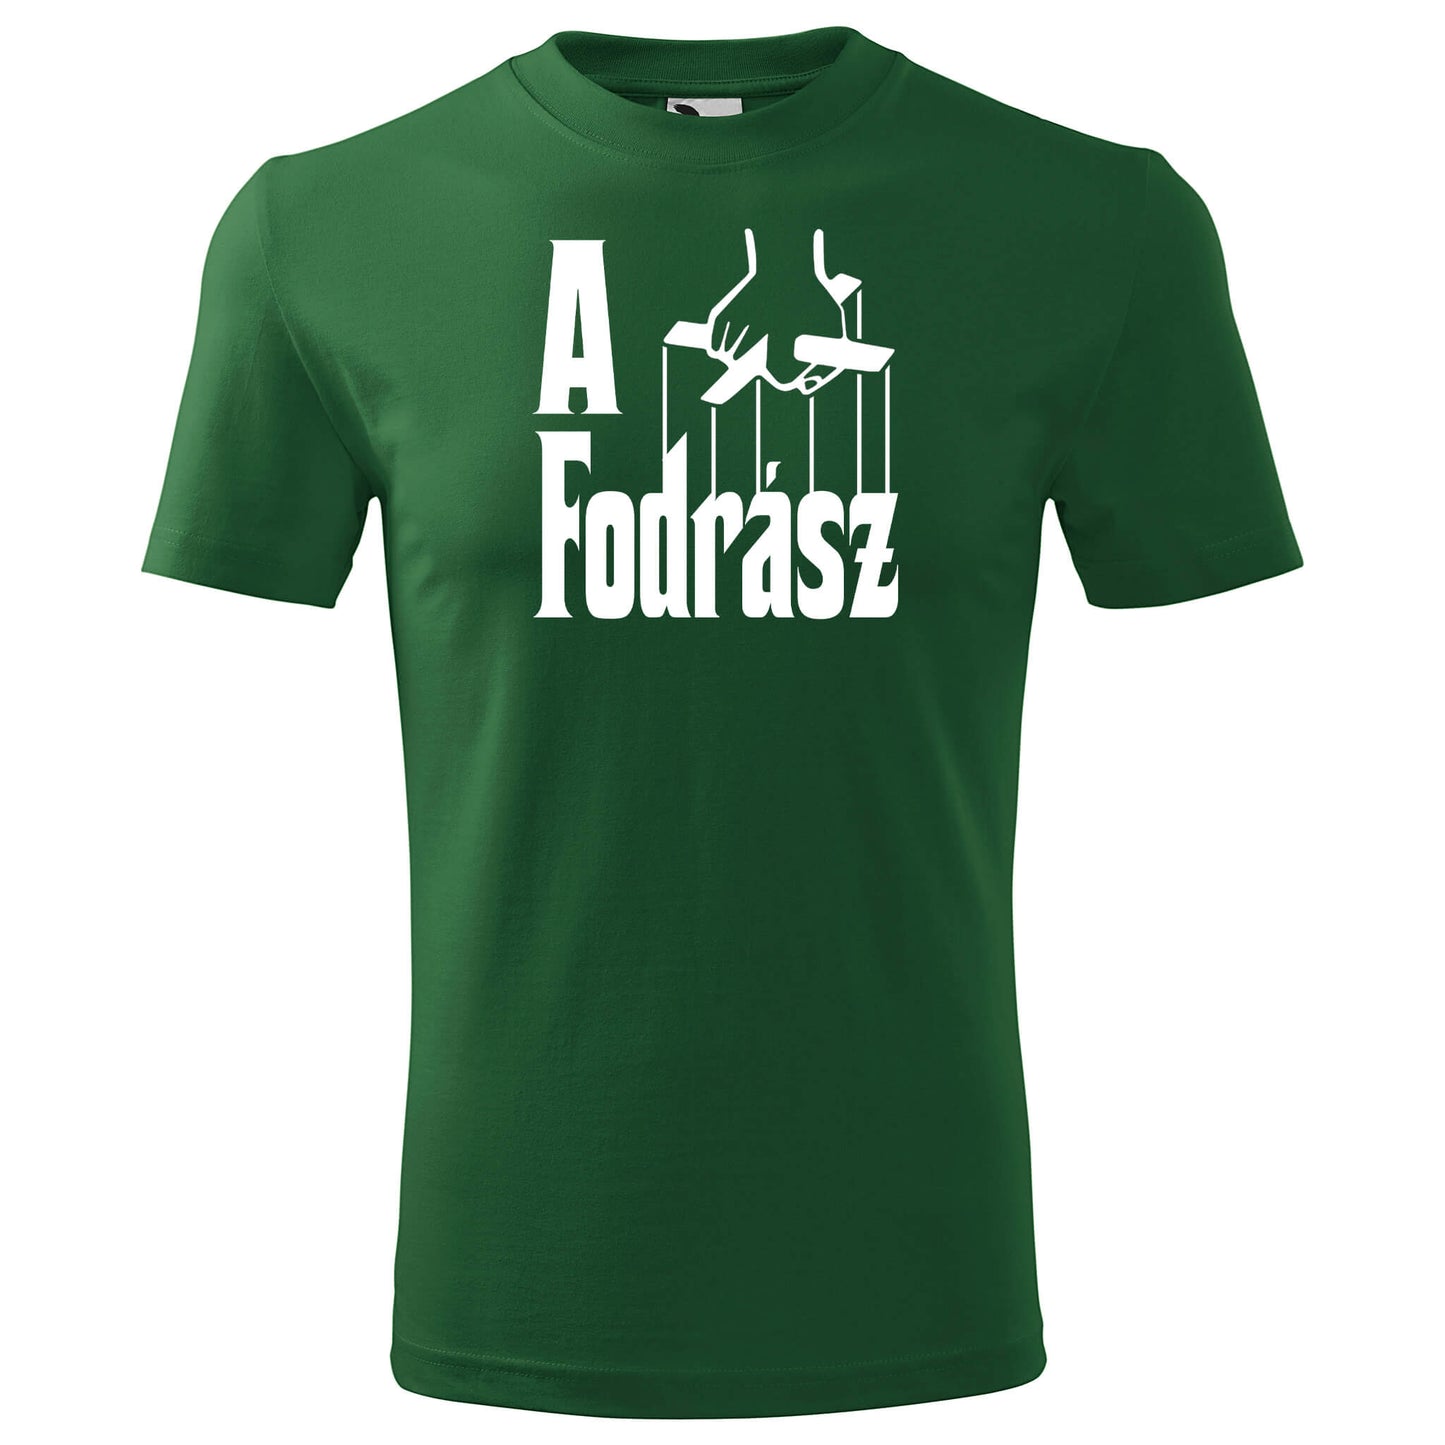 T-shirt - A fodrász - rvdesignprint